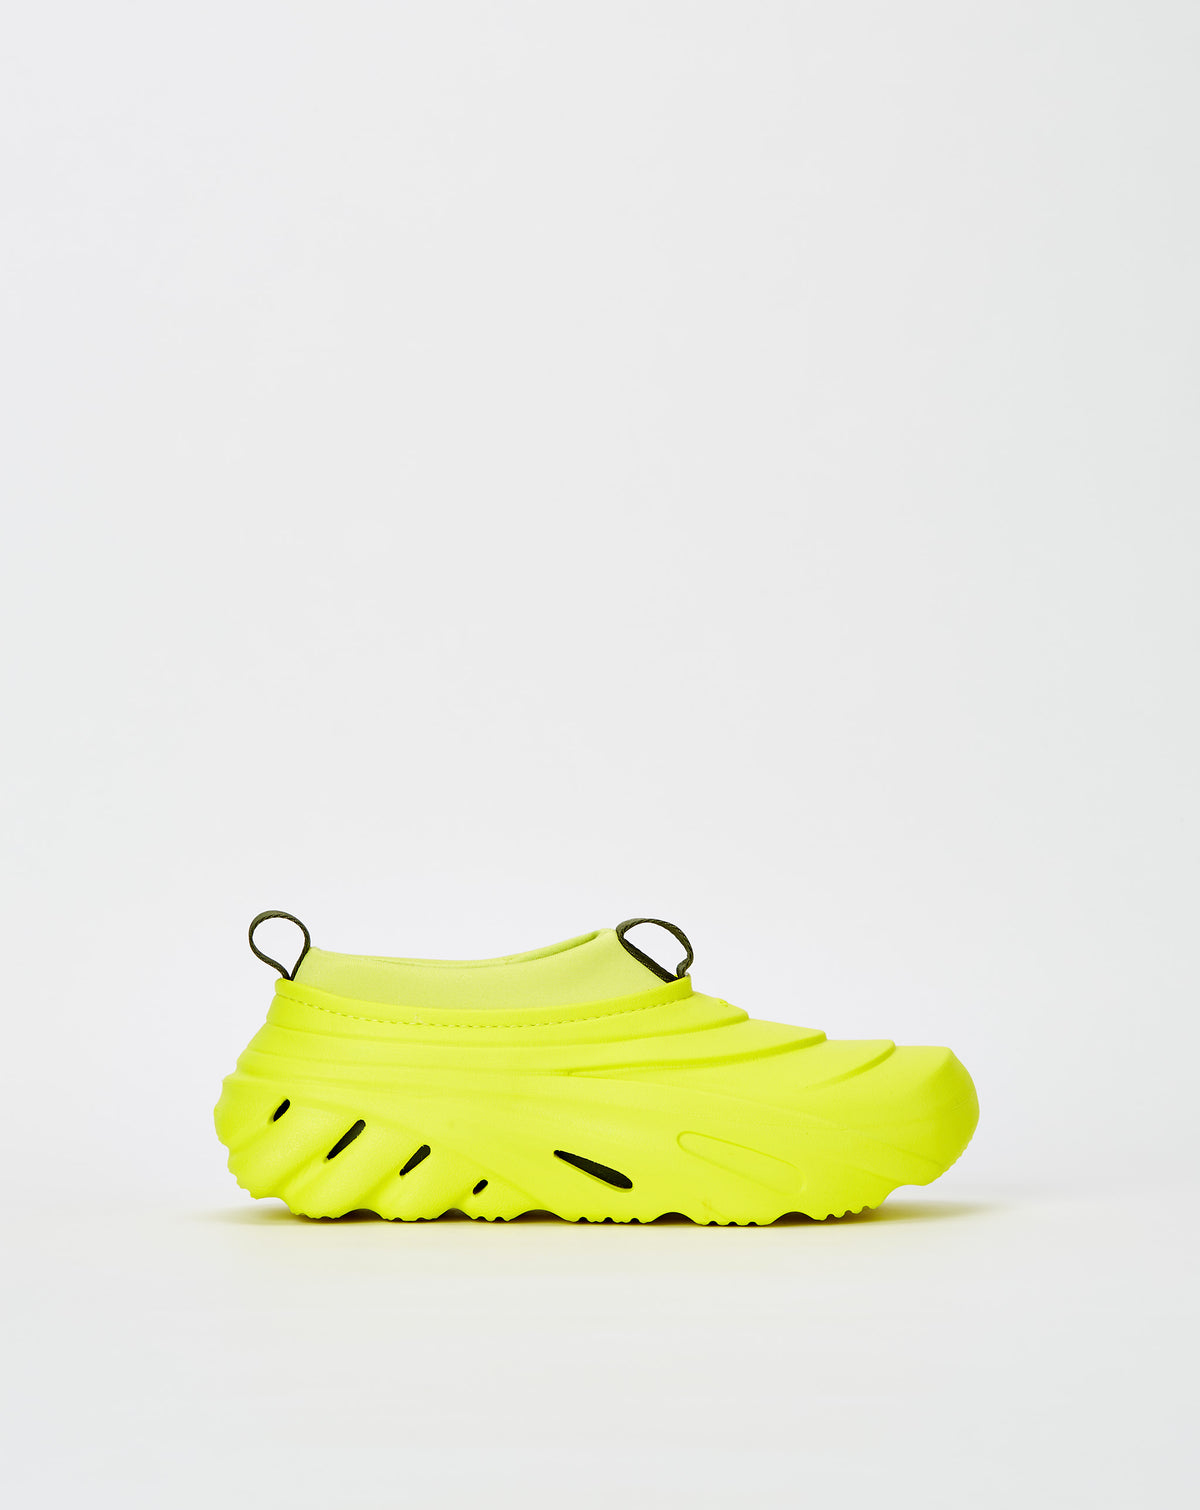 Crocs Echo Storm - Rule of Next Footwear